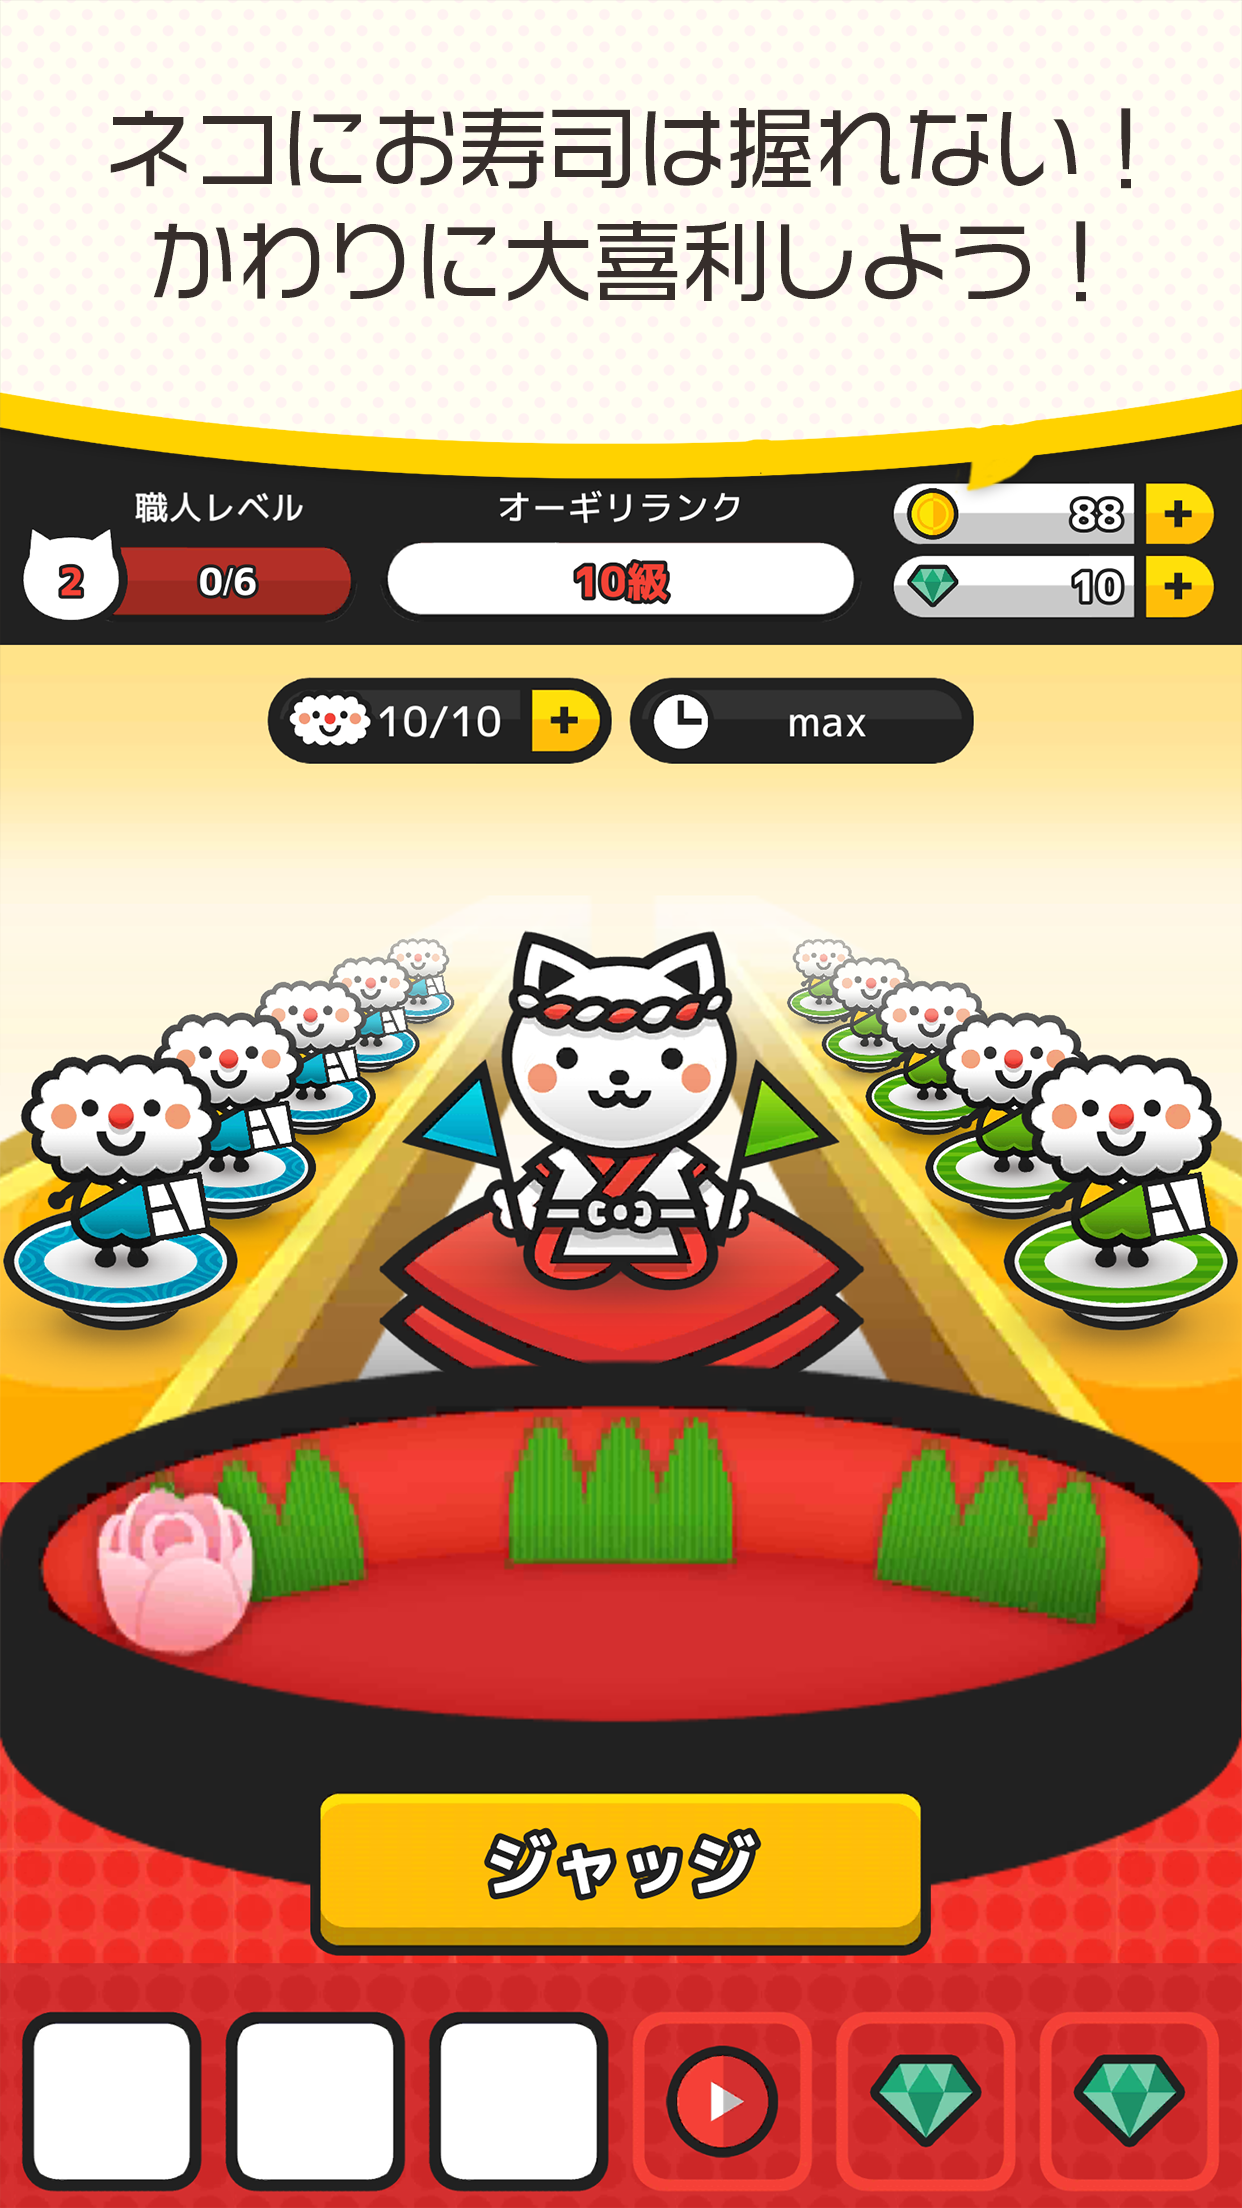 Screenshot 1 of Официальная манга Jump с Ogiri Sushi от Ogiri Cat от Shueisha 1.6.6